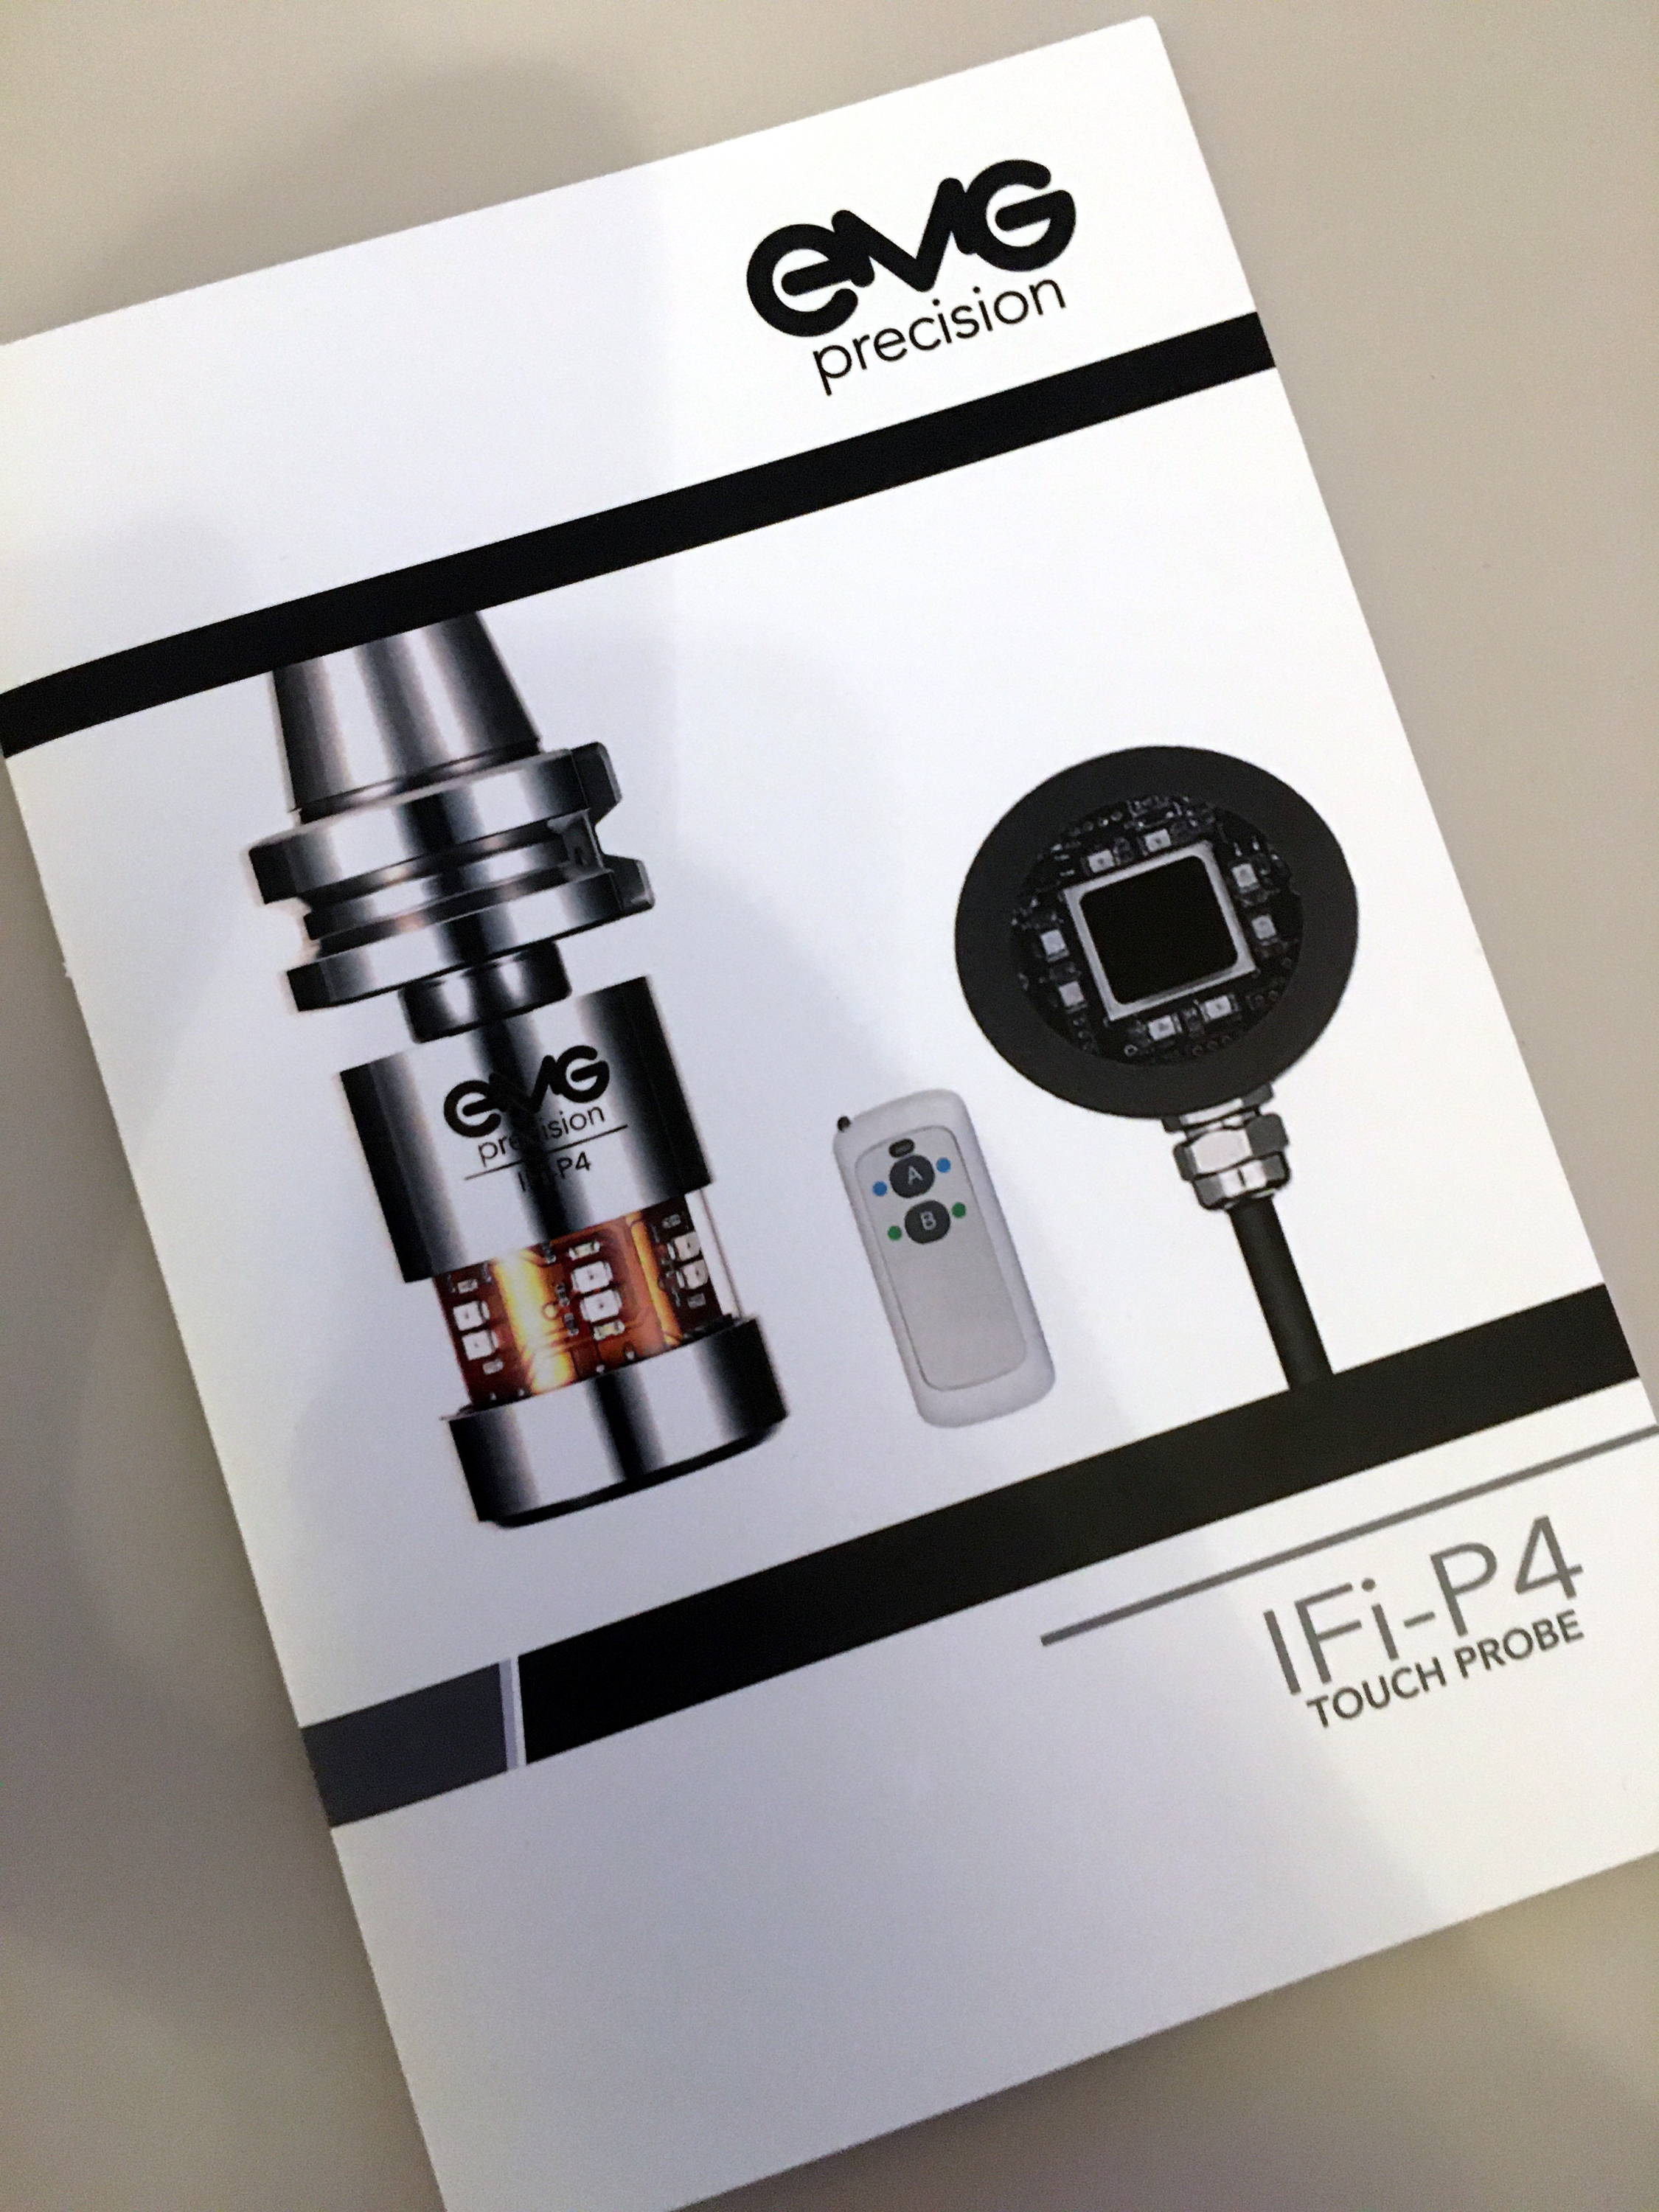 IFi-P4 Product Manual Photo